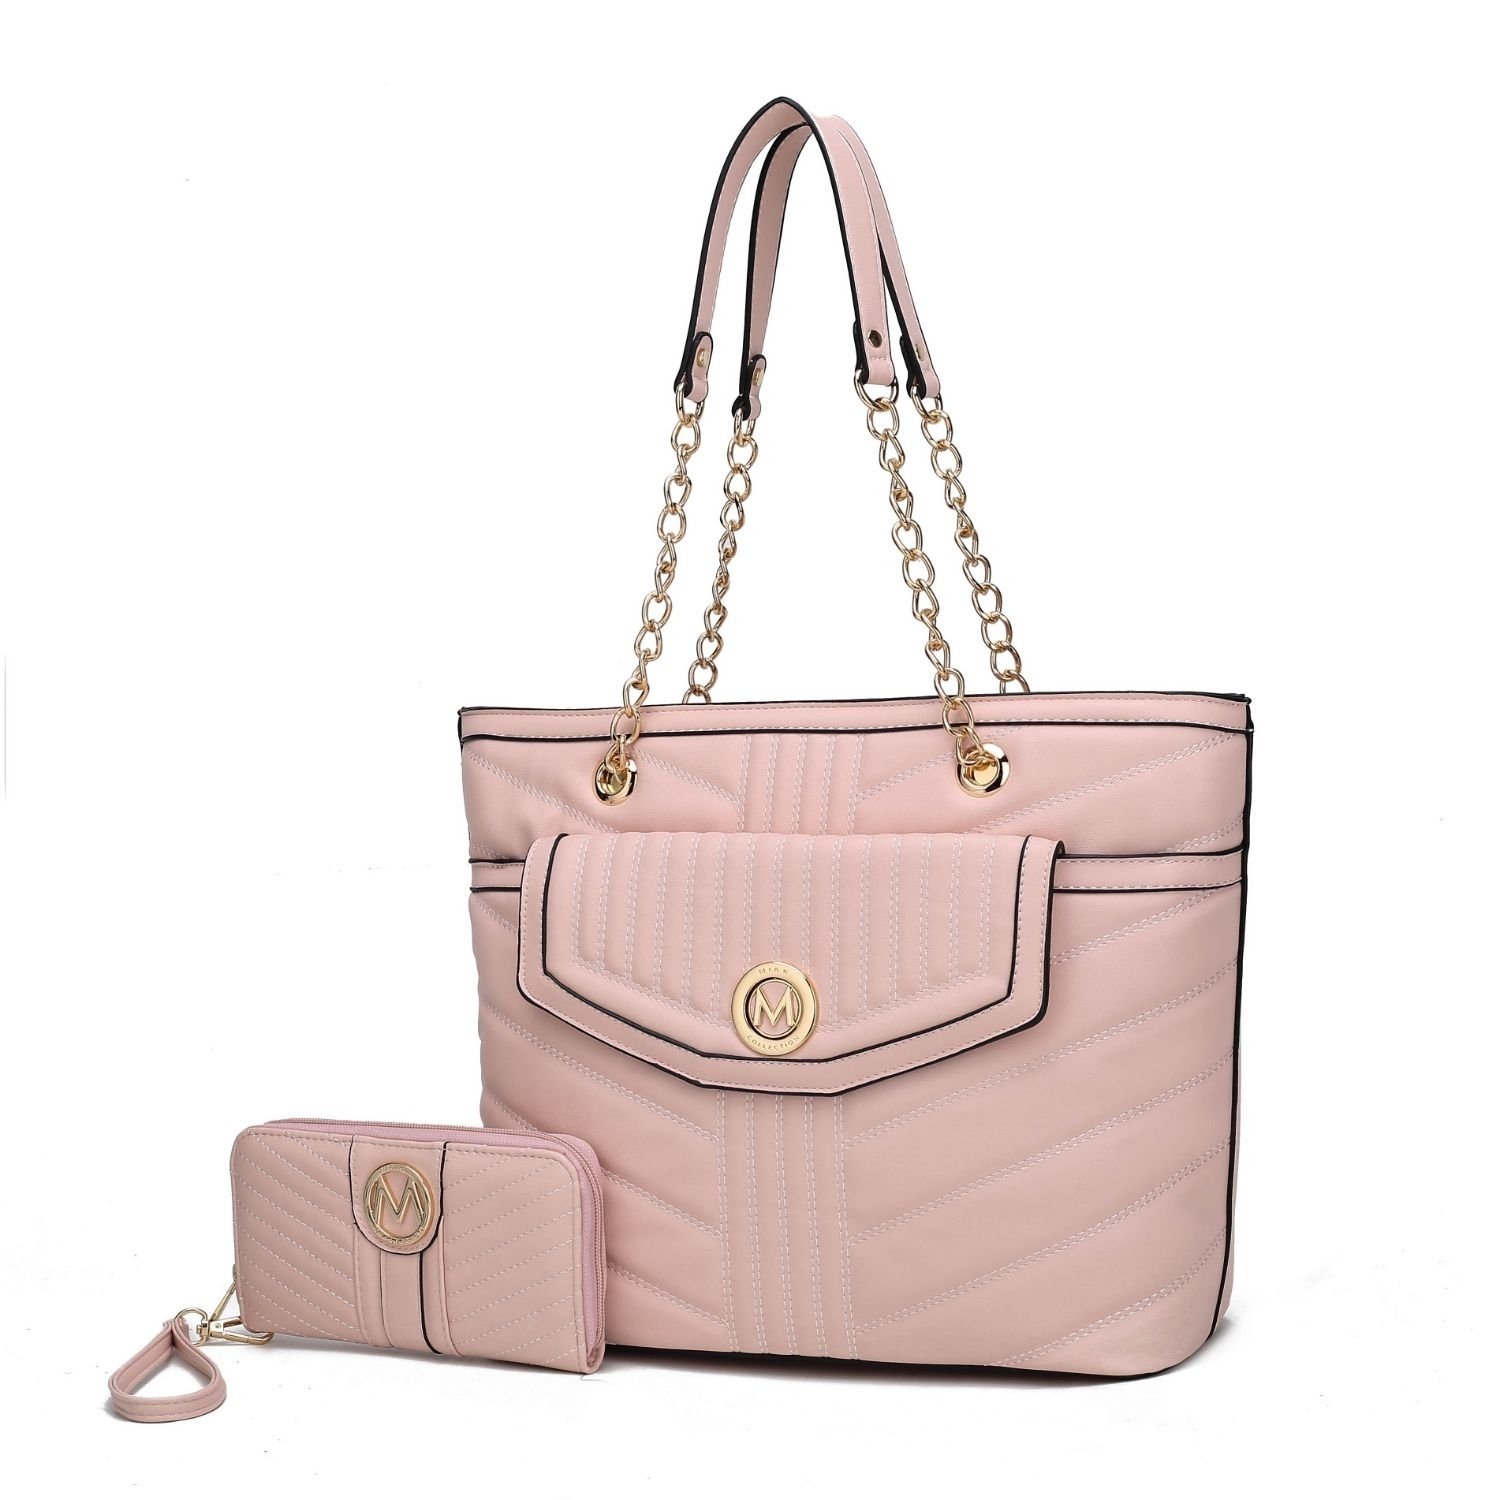 MKF Collection Chiari Tote Handbag With Wallet By Mia K. 2 Pieces. - Seafoam